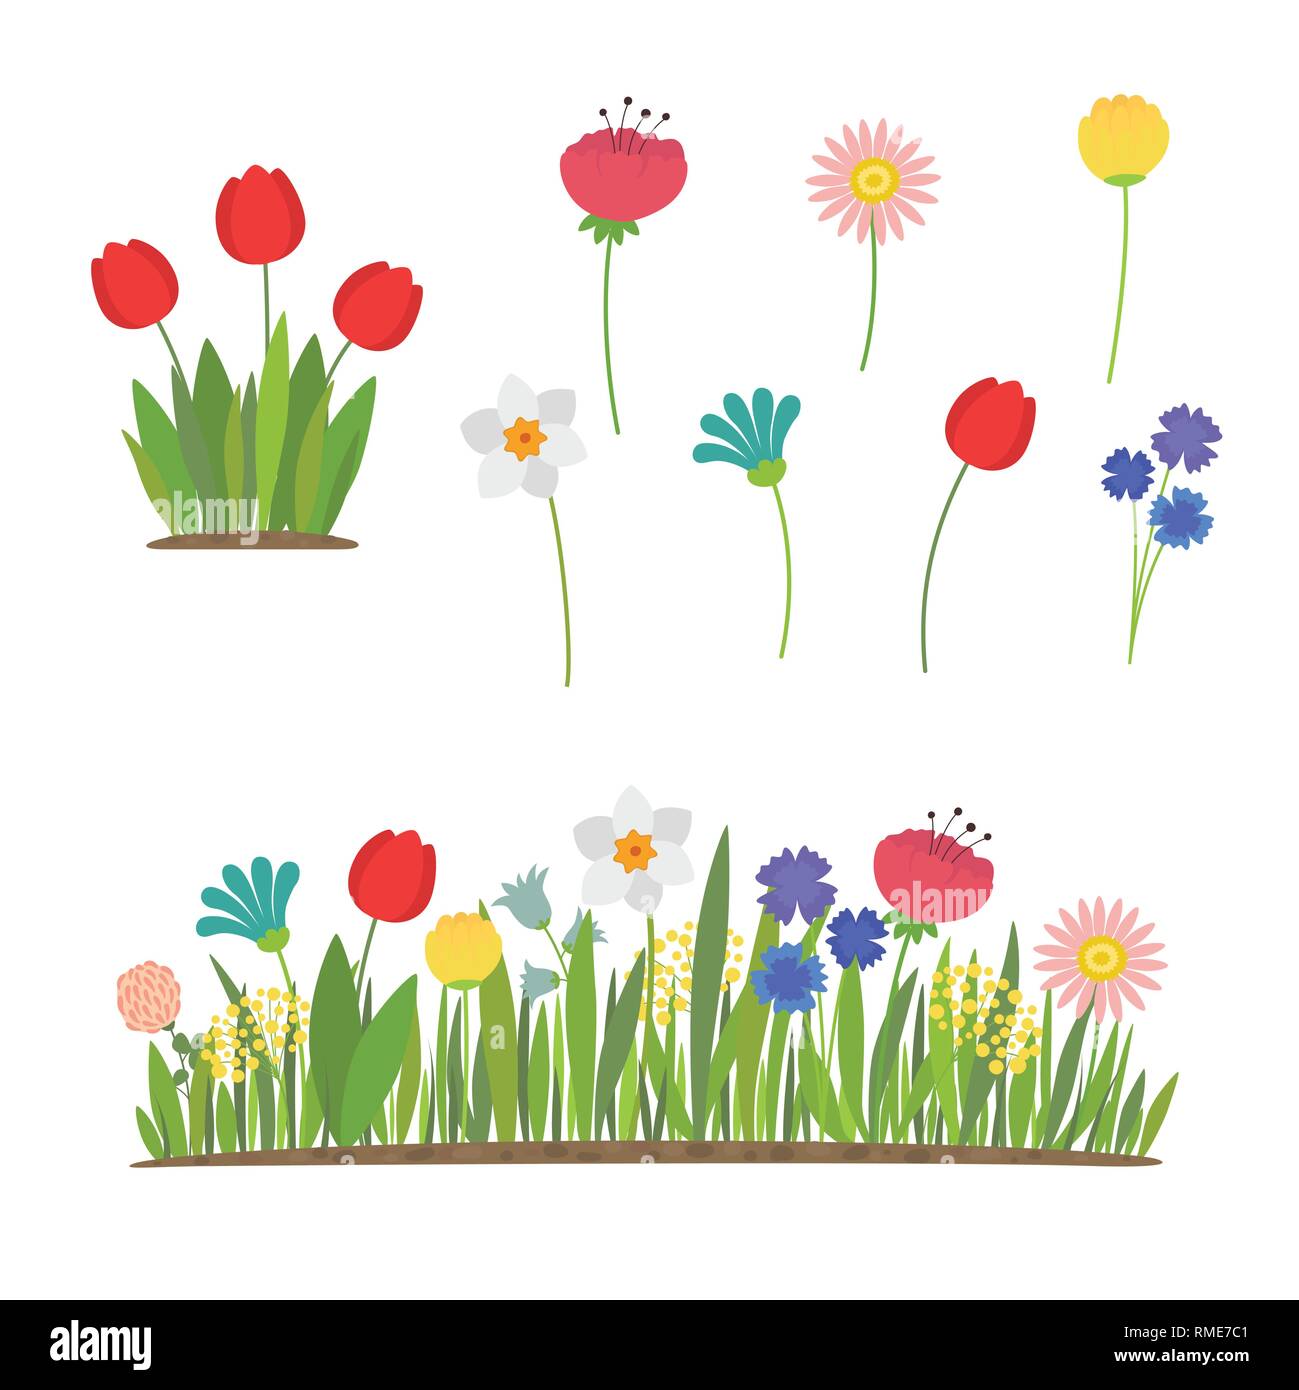 Las flores de la primavera que crece en el jardín. Los tulipanes, narcisos y otras flores Ilustración del Vector